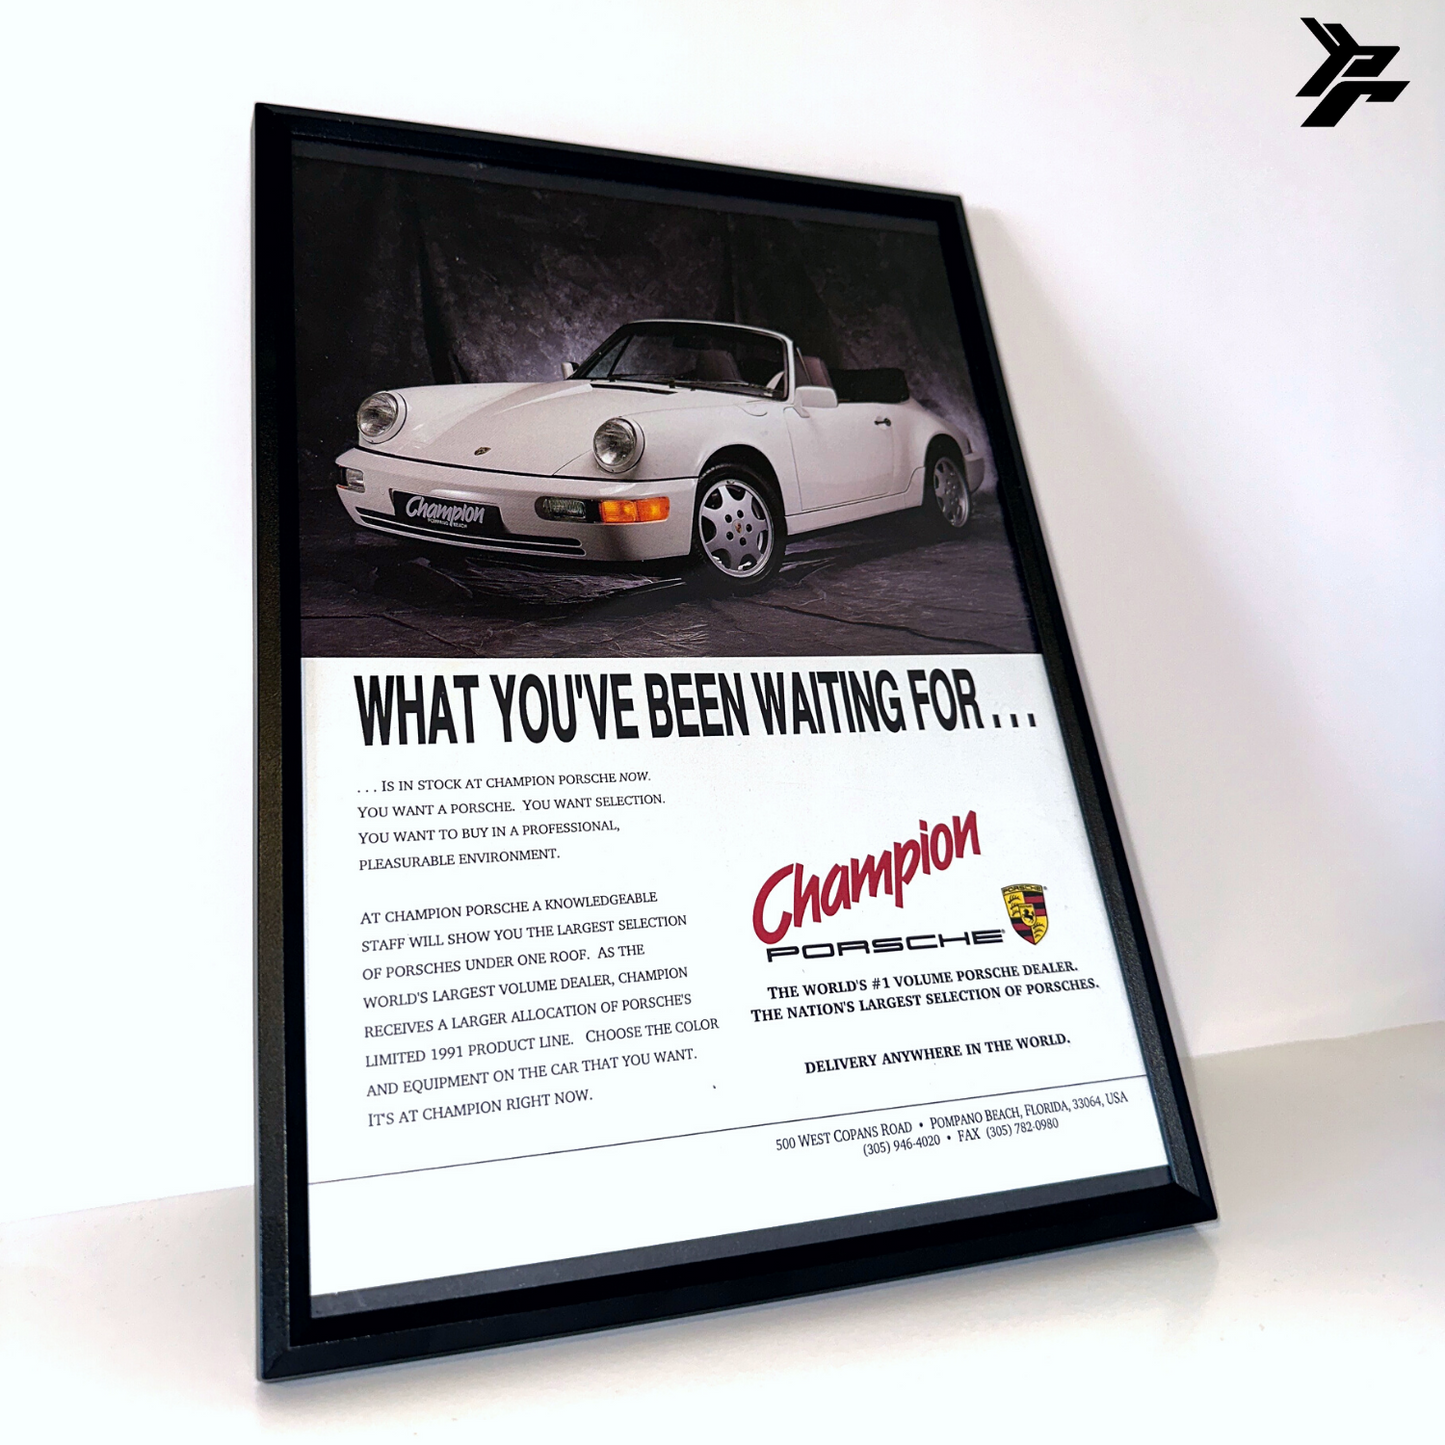 Porsche 964 been waiting for framed ad